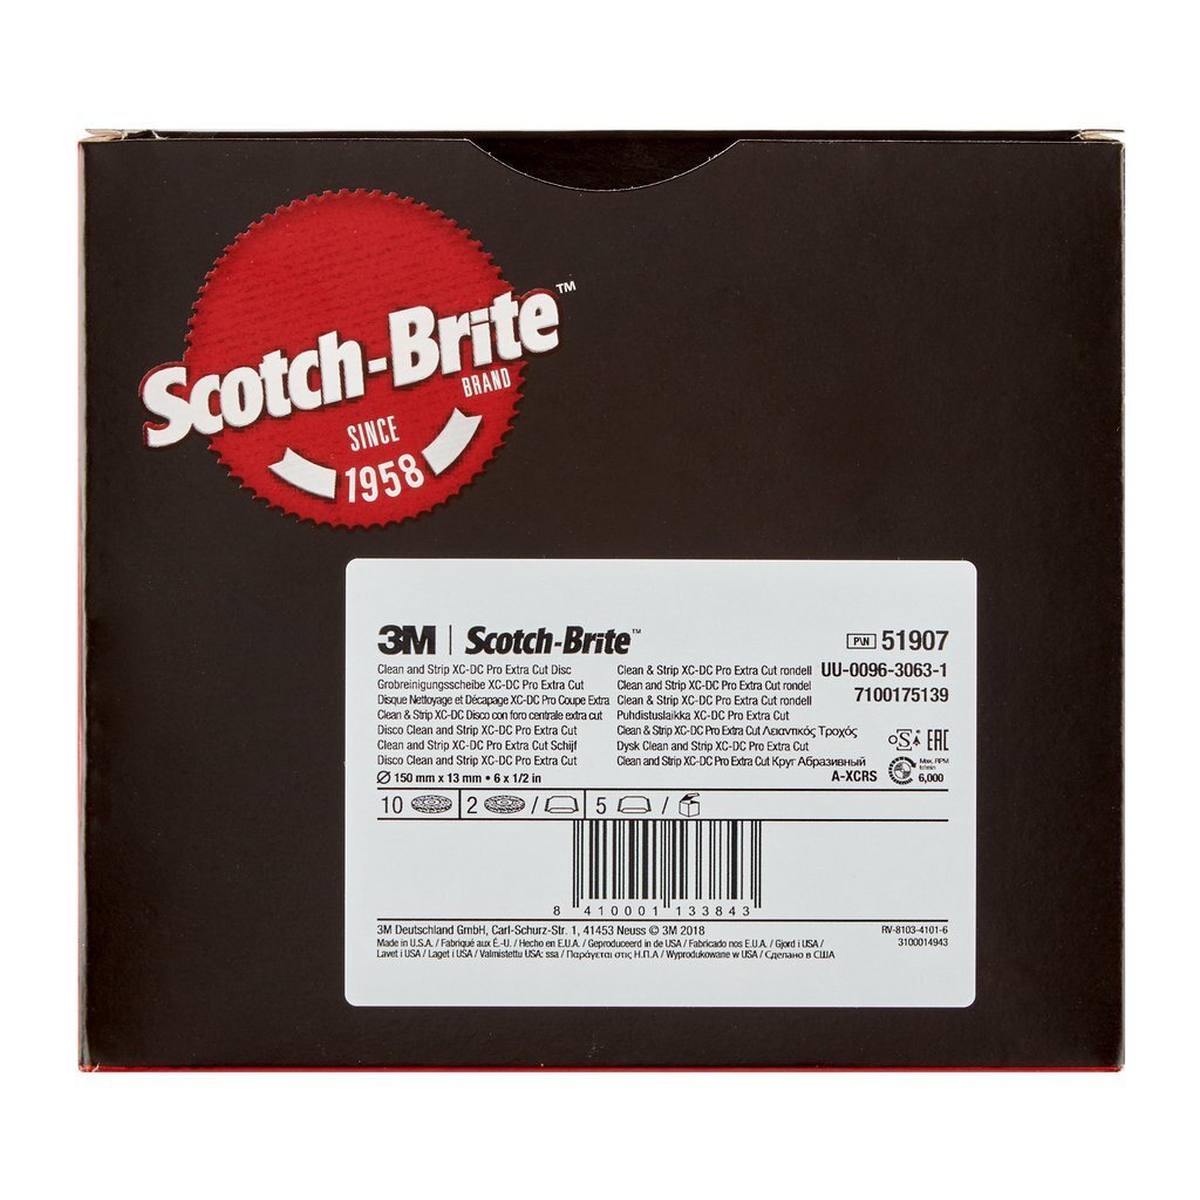 3M Scotch-Brite coarse cleaning disc XT-DC Pro Extra Cut, 150 mm x 13 mm, A, extra coarse